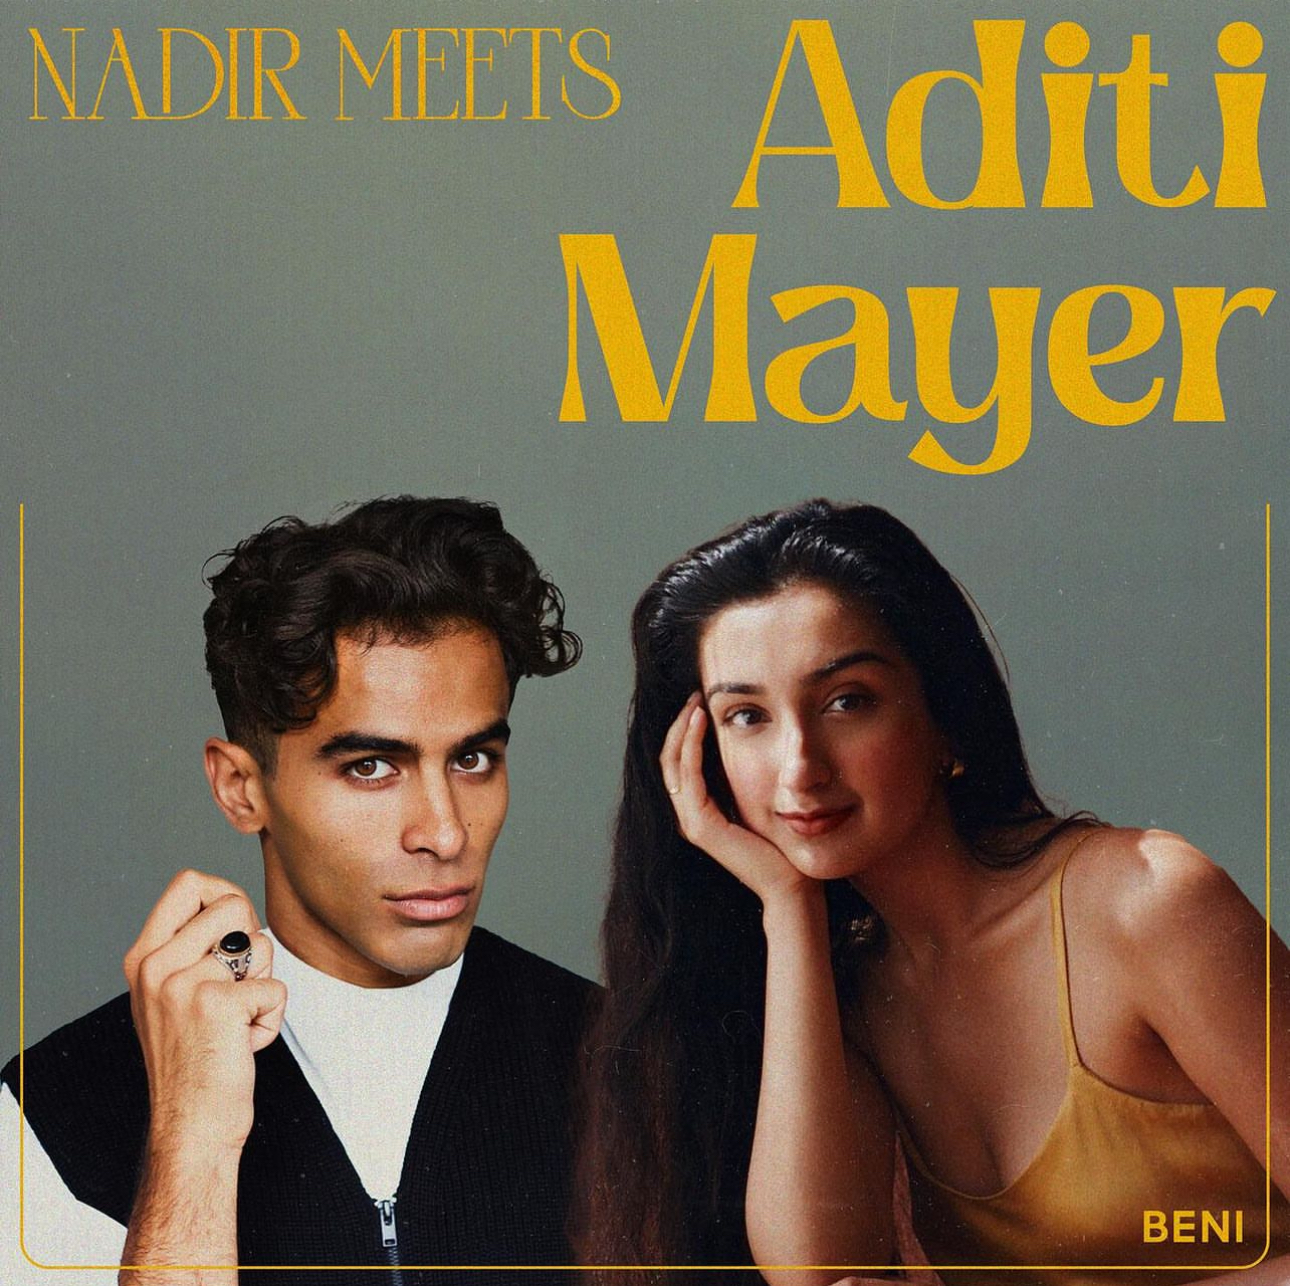 cover art for Nadir Meets: Aditi Mayer 